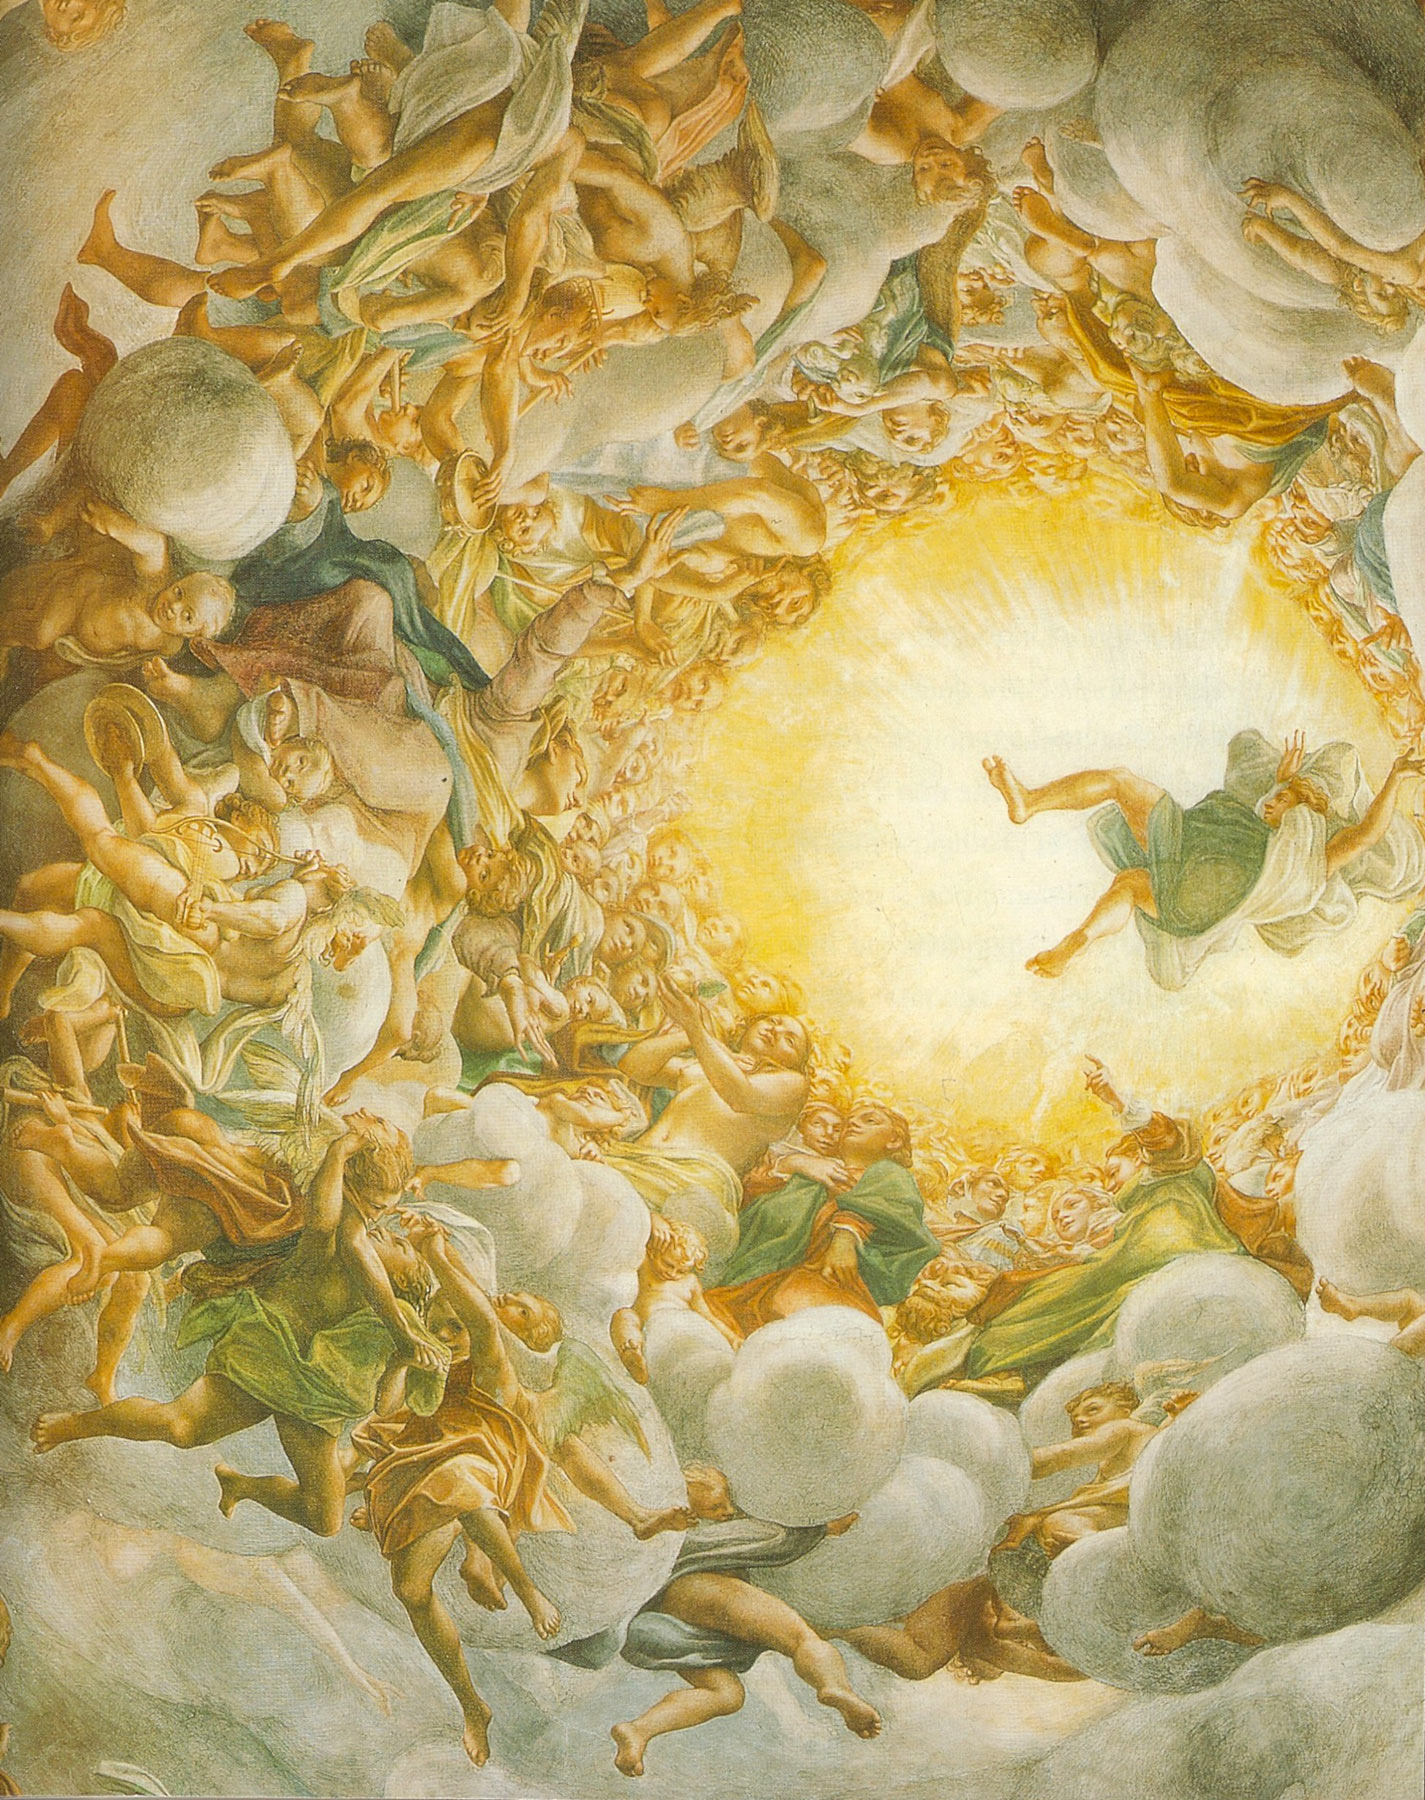 Correggio, Assunzione di Maria, particolare (affresco della cupola del Duomo di Parma)
